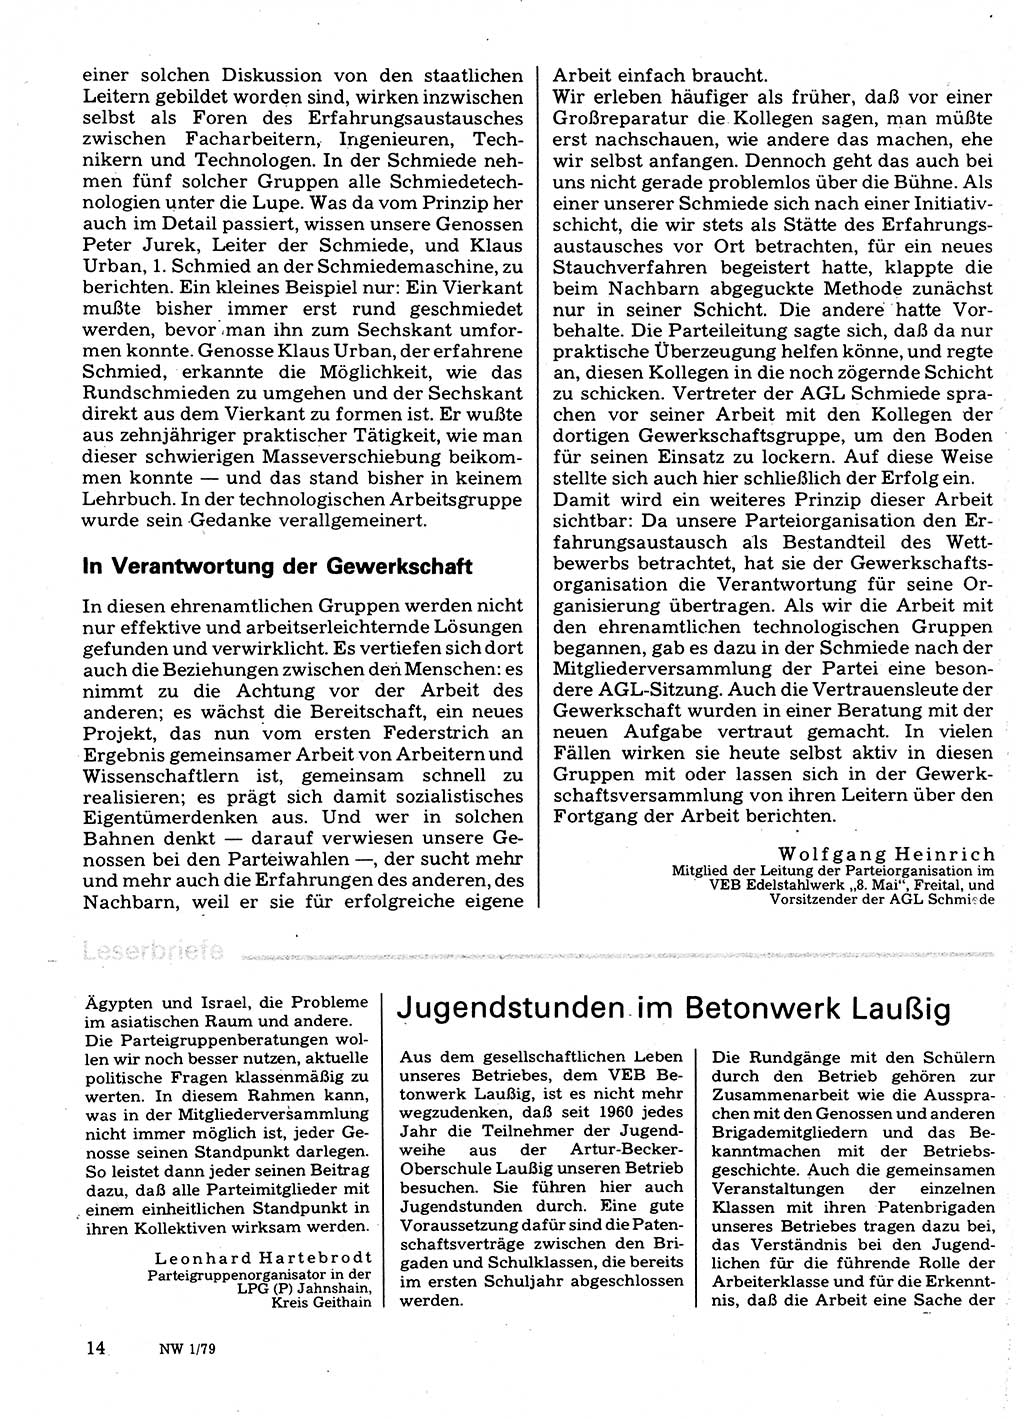 Neuer Weg (NW), Organ des Zentralkomitees (ZK) der SED (Sozialistische Einheitspartei Deutschlands) für Fragen des Parteilebens, 34. Jahrgang [Deutsche Demokratische Republik (DDR)] 1979, Seite 14 (NW ZK SED DDR 1979, S. 14)